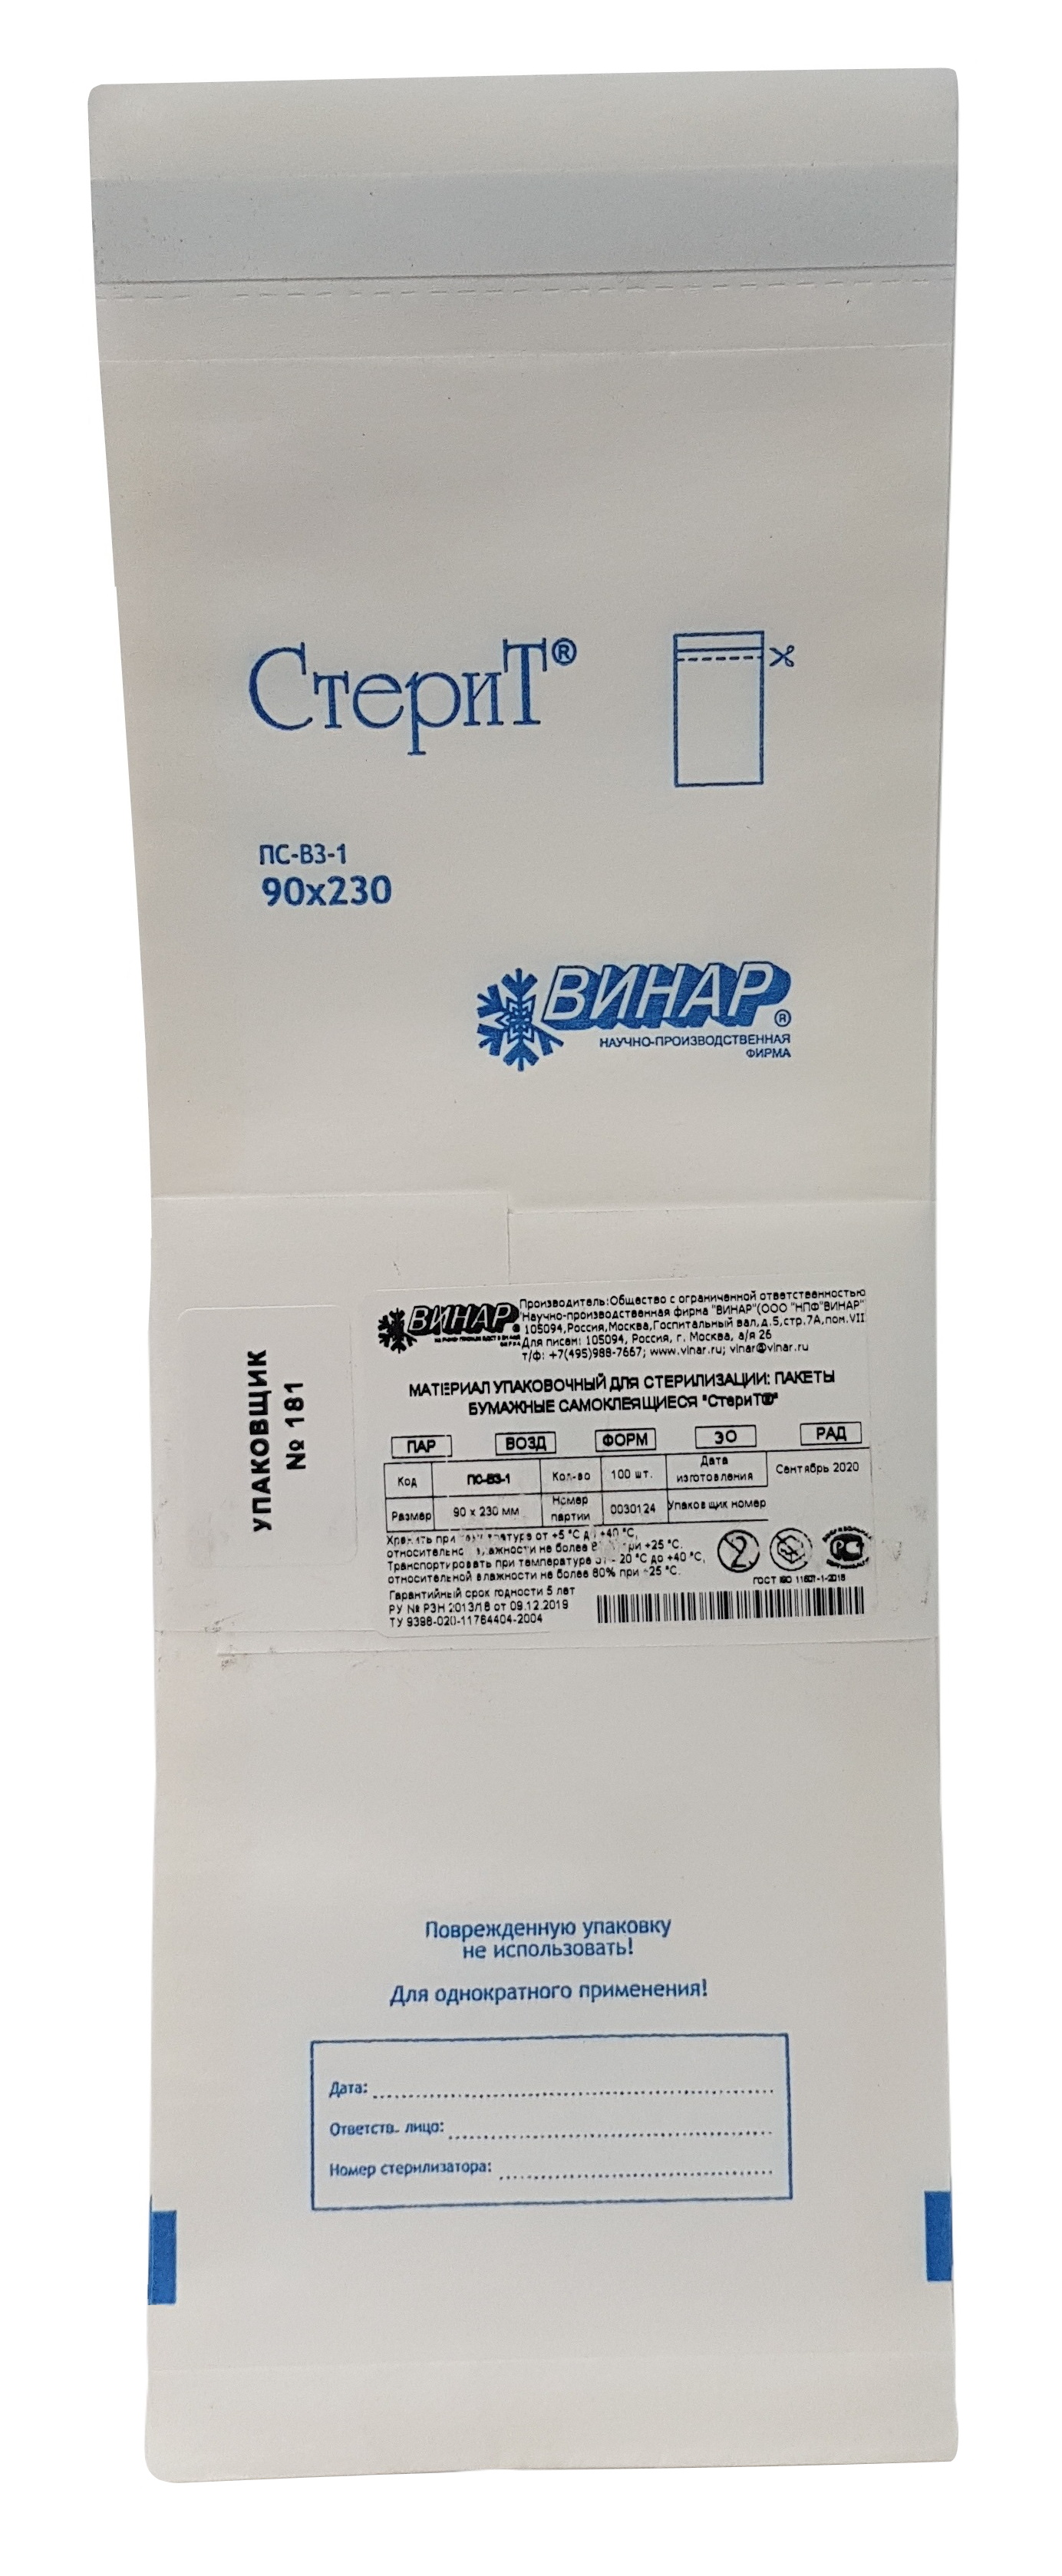 Пакеты бумажные самоклеящиеся Стерит ПС-ВЗ-1, Винар,90х230 мм, 100 шт.